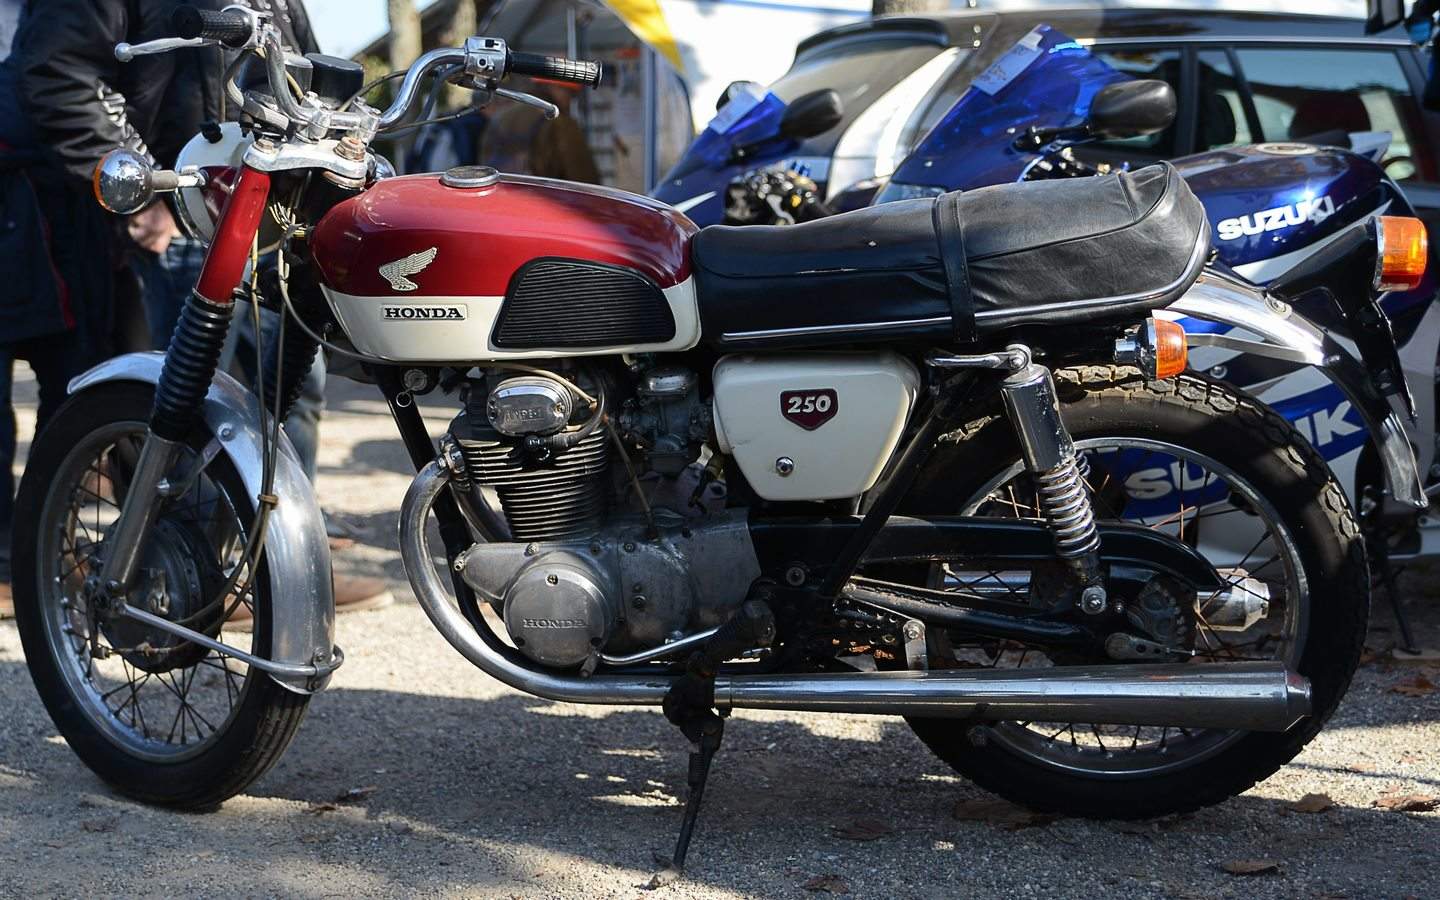 Honda CB 250 K (1967-1976) - meistverkauftes 250er Motorrad